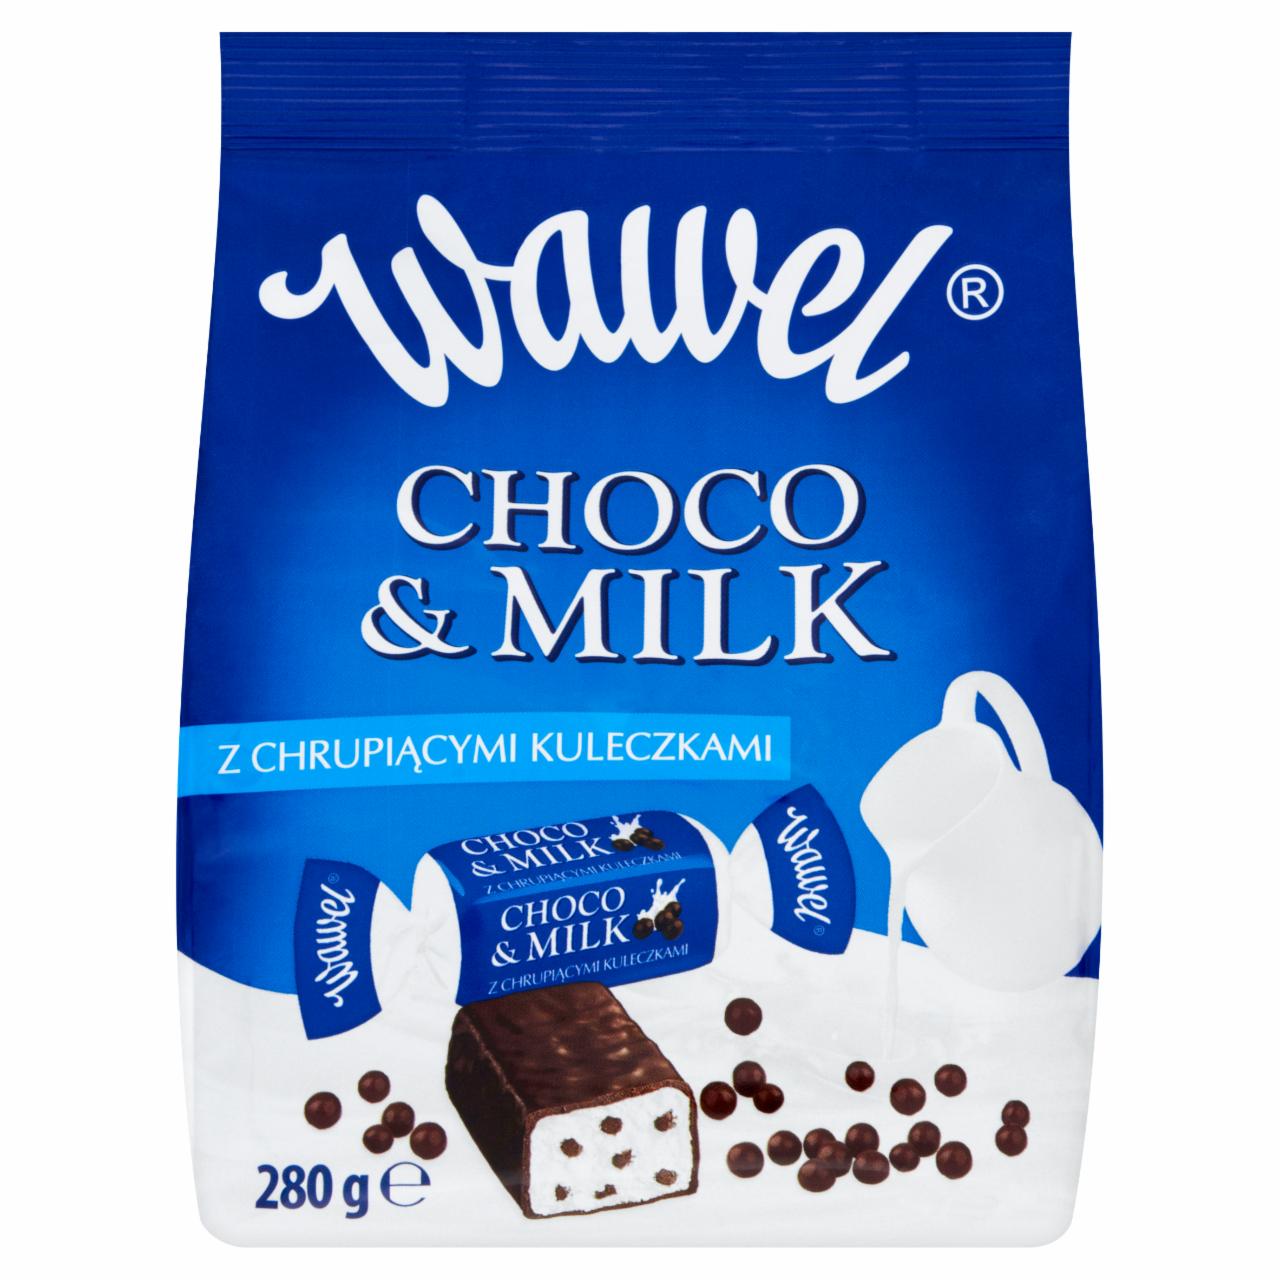 Zdjęcia - Wawel Choco and Milk z chrupiącymi kuleczkami Cukierki w polewie 280 g